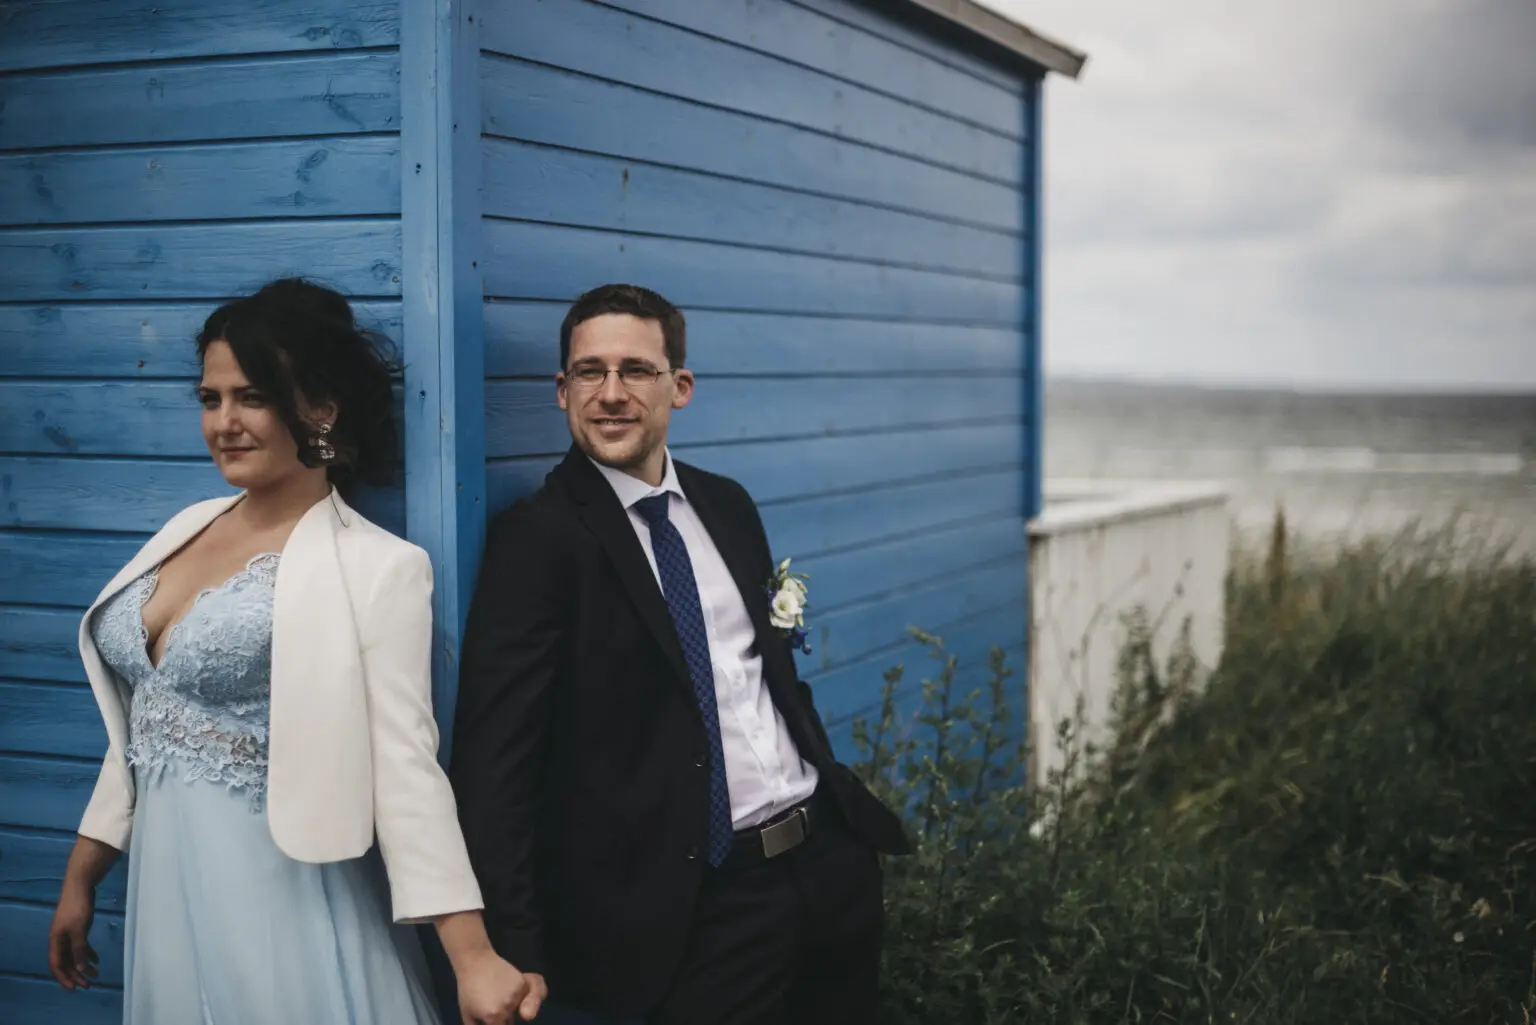 Ipek and Christian elopement photographer kimksorensen 51 Getting Married in Denmark